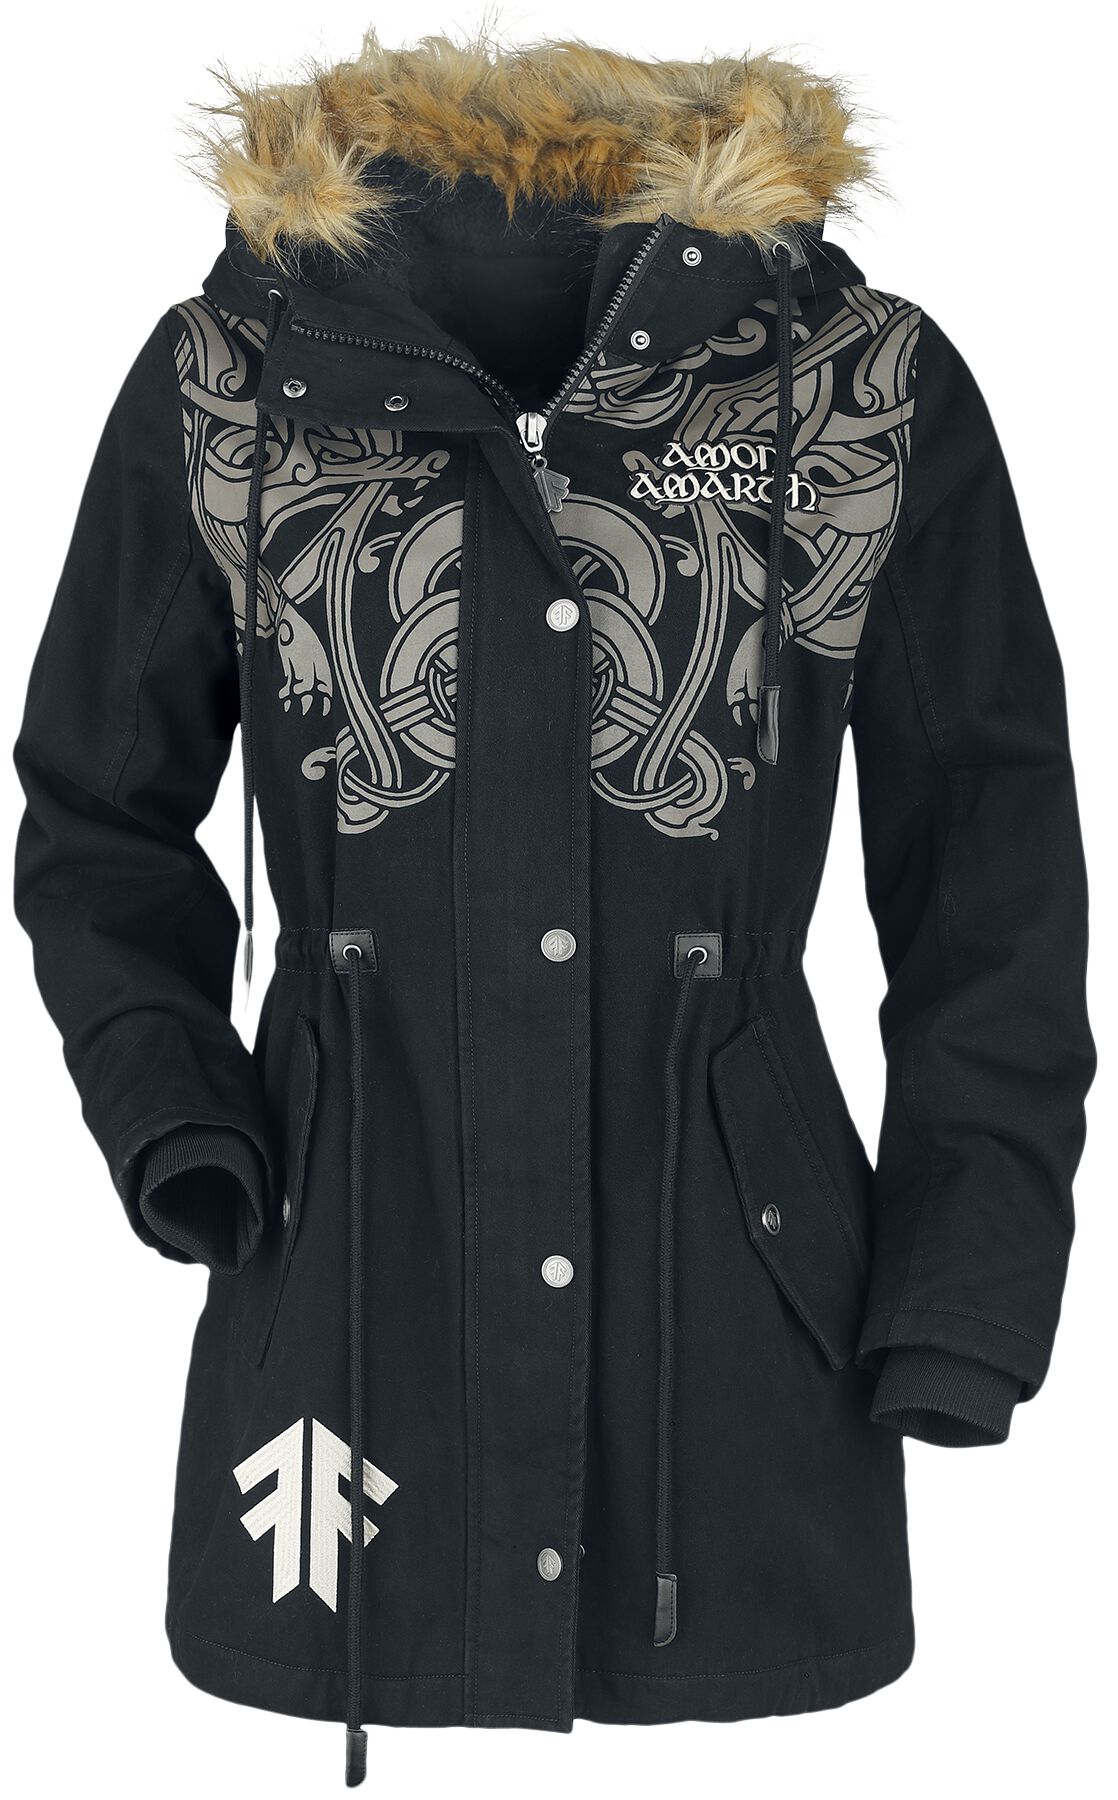 Amon Amarth Winterjacke - EMP Signature Collection - S bis XL - für Damen - Größe M - schwarz  - EMP exklusives Merchandise!